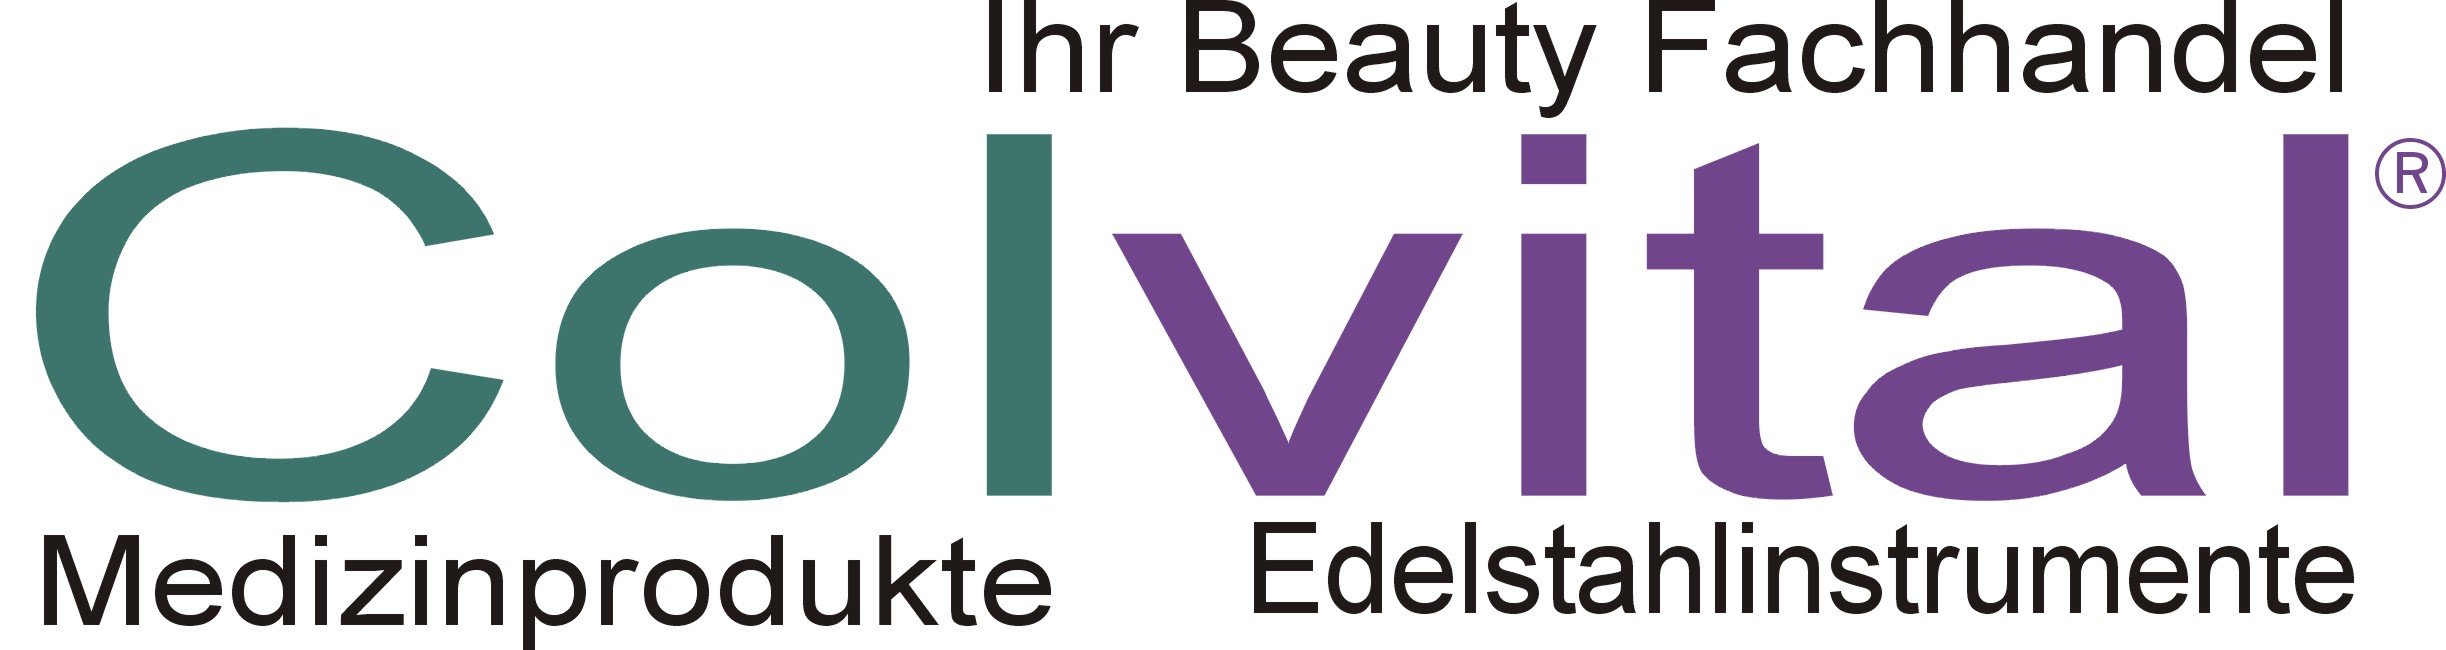 Colvital - Ihr Fachhandel für Fußpflege - Kosmetik - Medizinprodukte